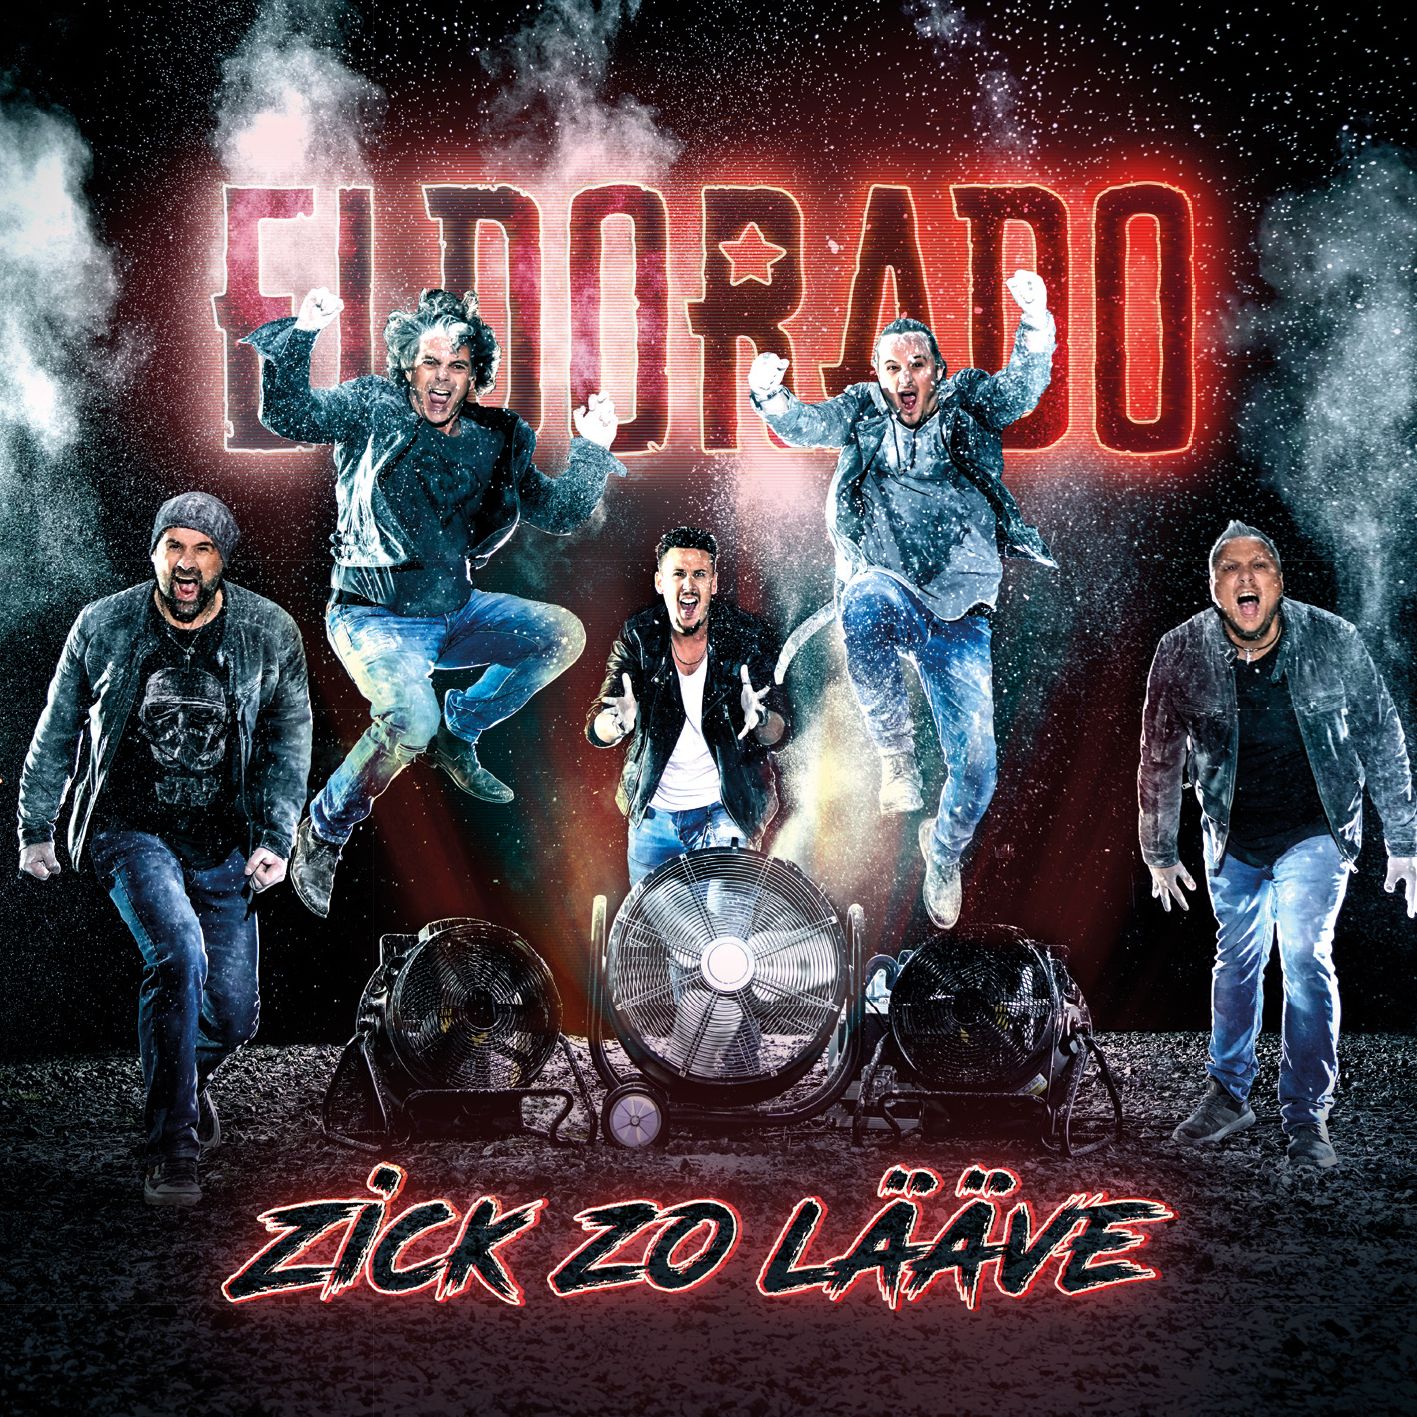 Eldorado - Zick zo lääve